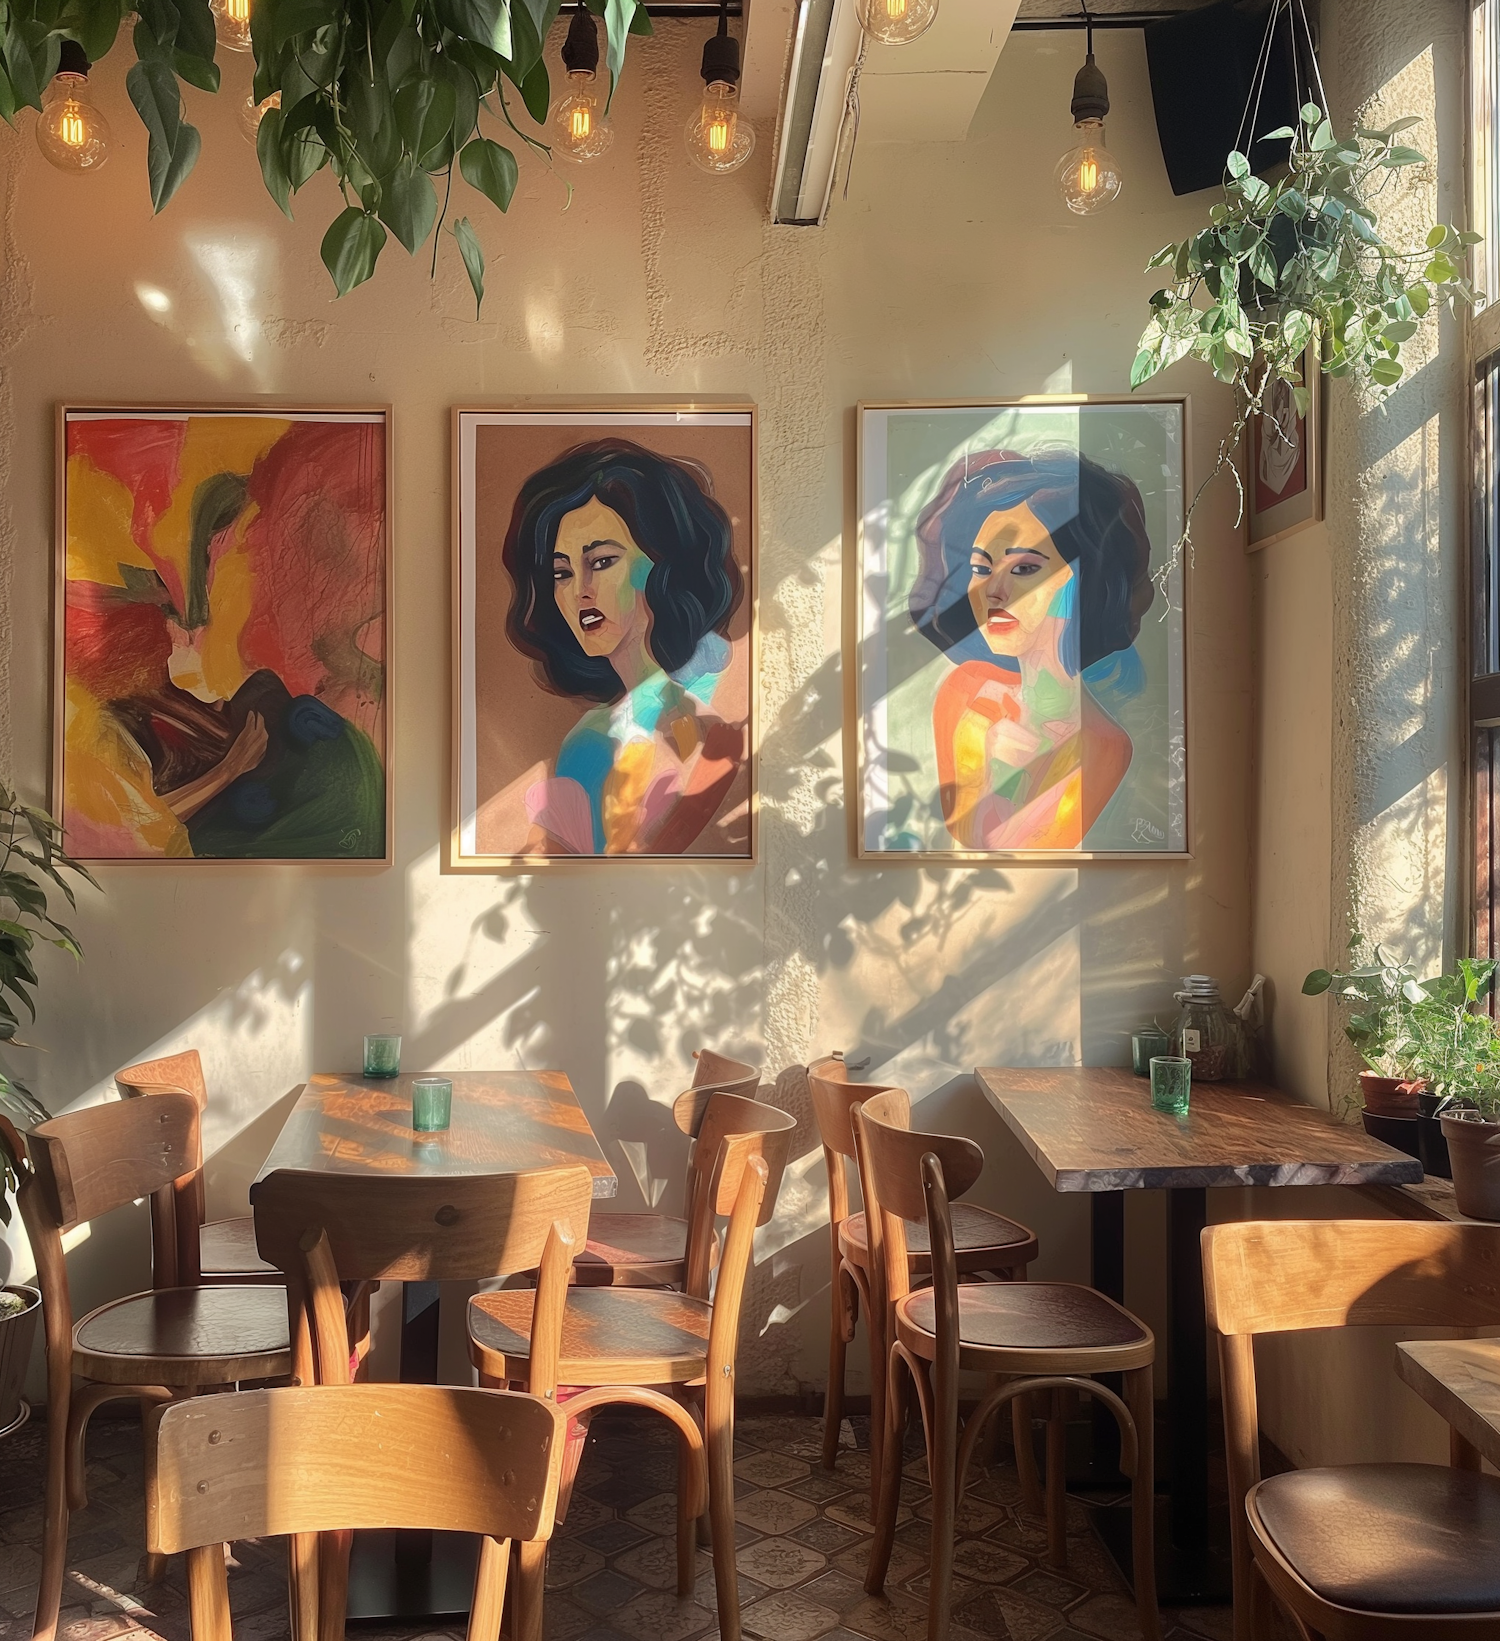 Cozy Café Interior with Artistic Portraits